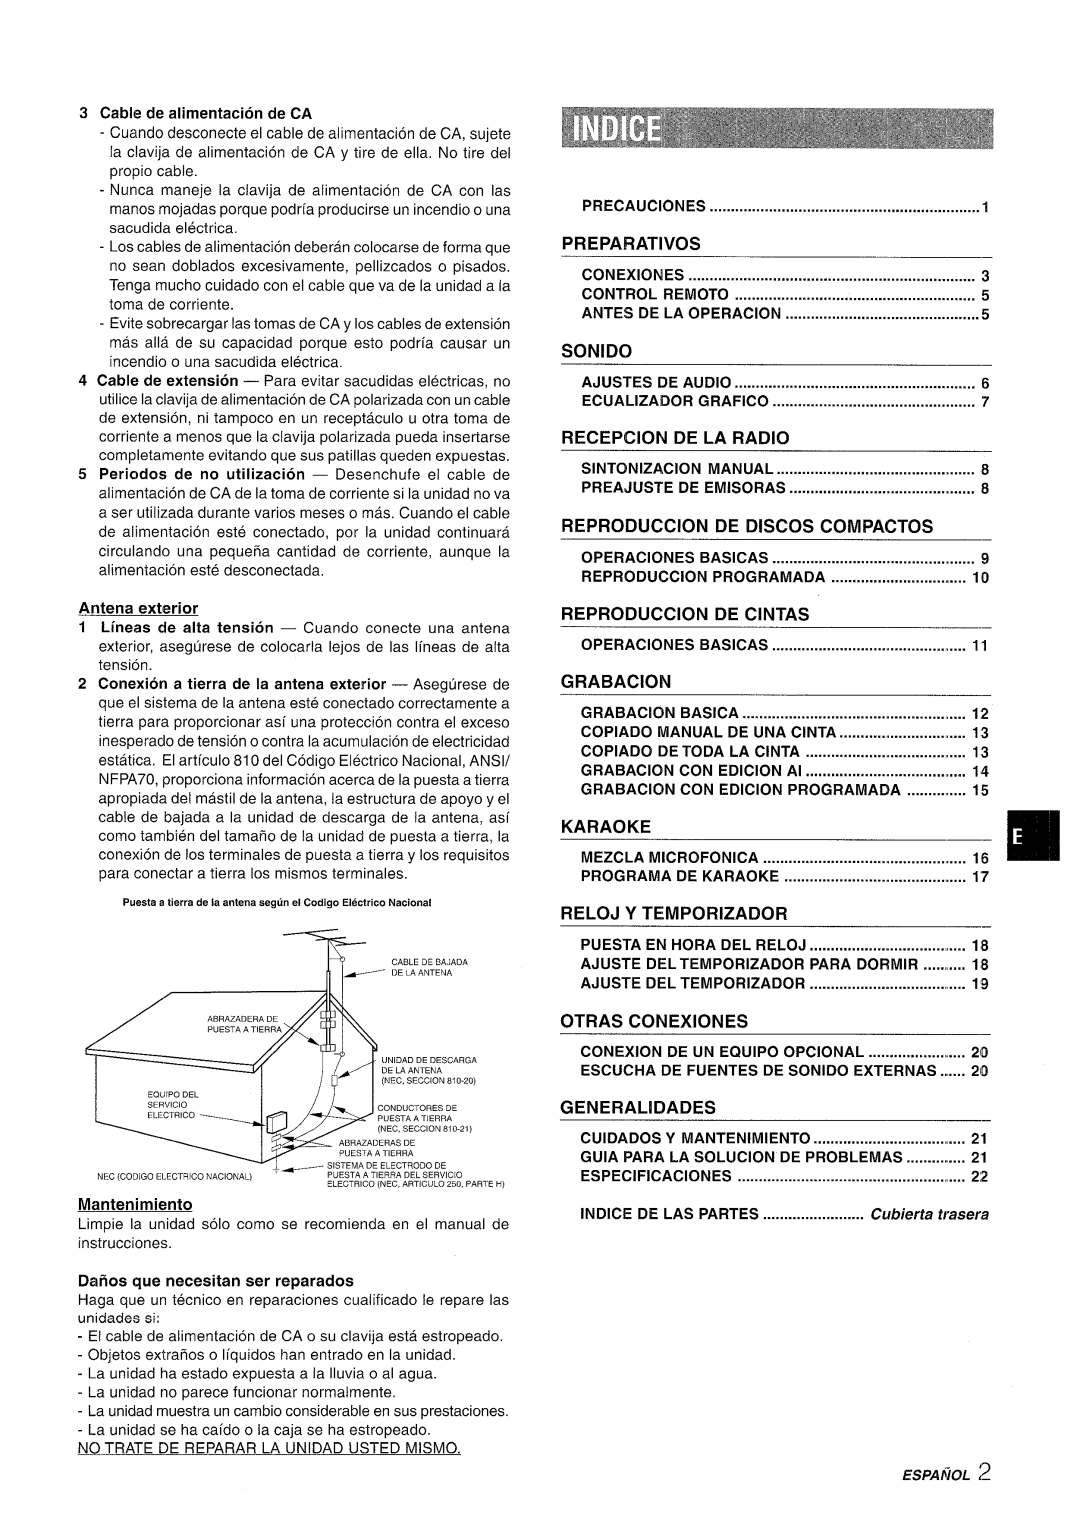 Aiwa NSX-A508 manual Preparatives, Sonido, Recepcion, De La Radio, Reproduction, De Discos, Compactos, De Cintas, Grabacion 